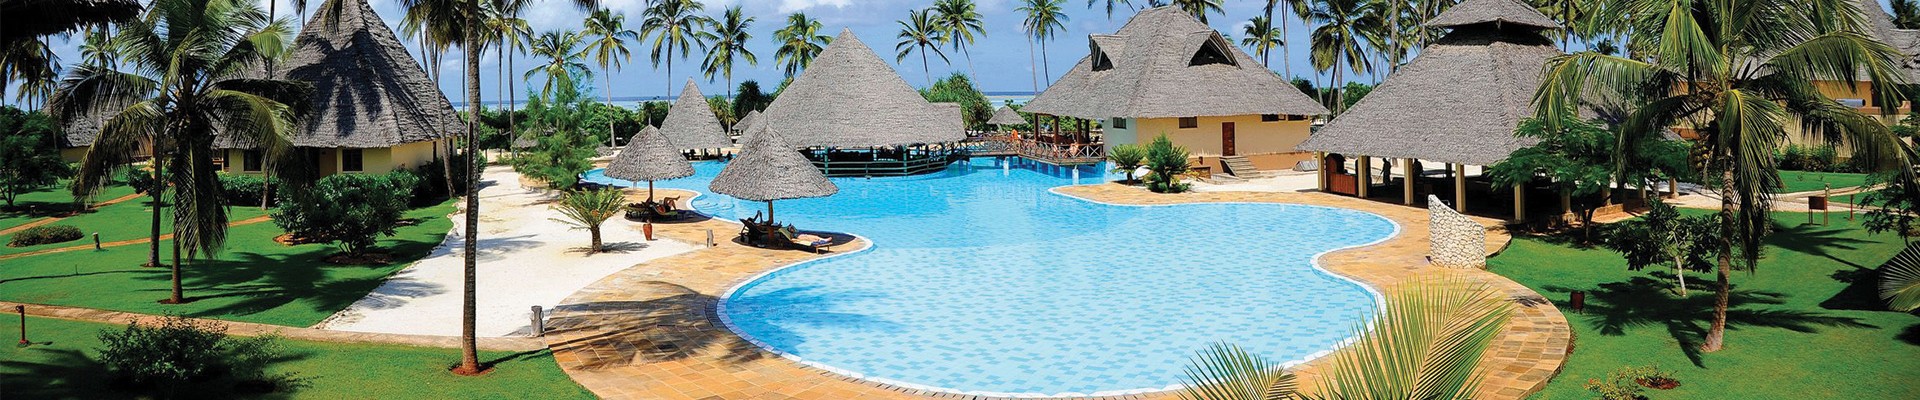 5* Neptune Pwani Beach Resort & Spa - Zanzibar Package on FlySafair (7 Nights)